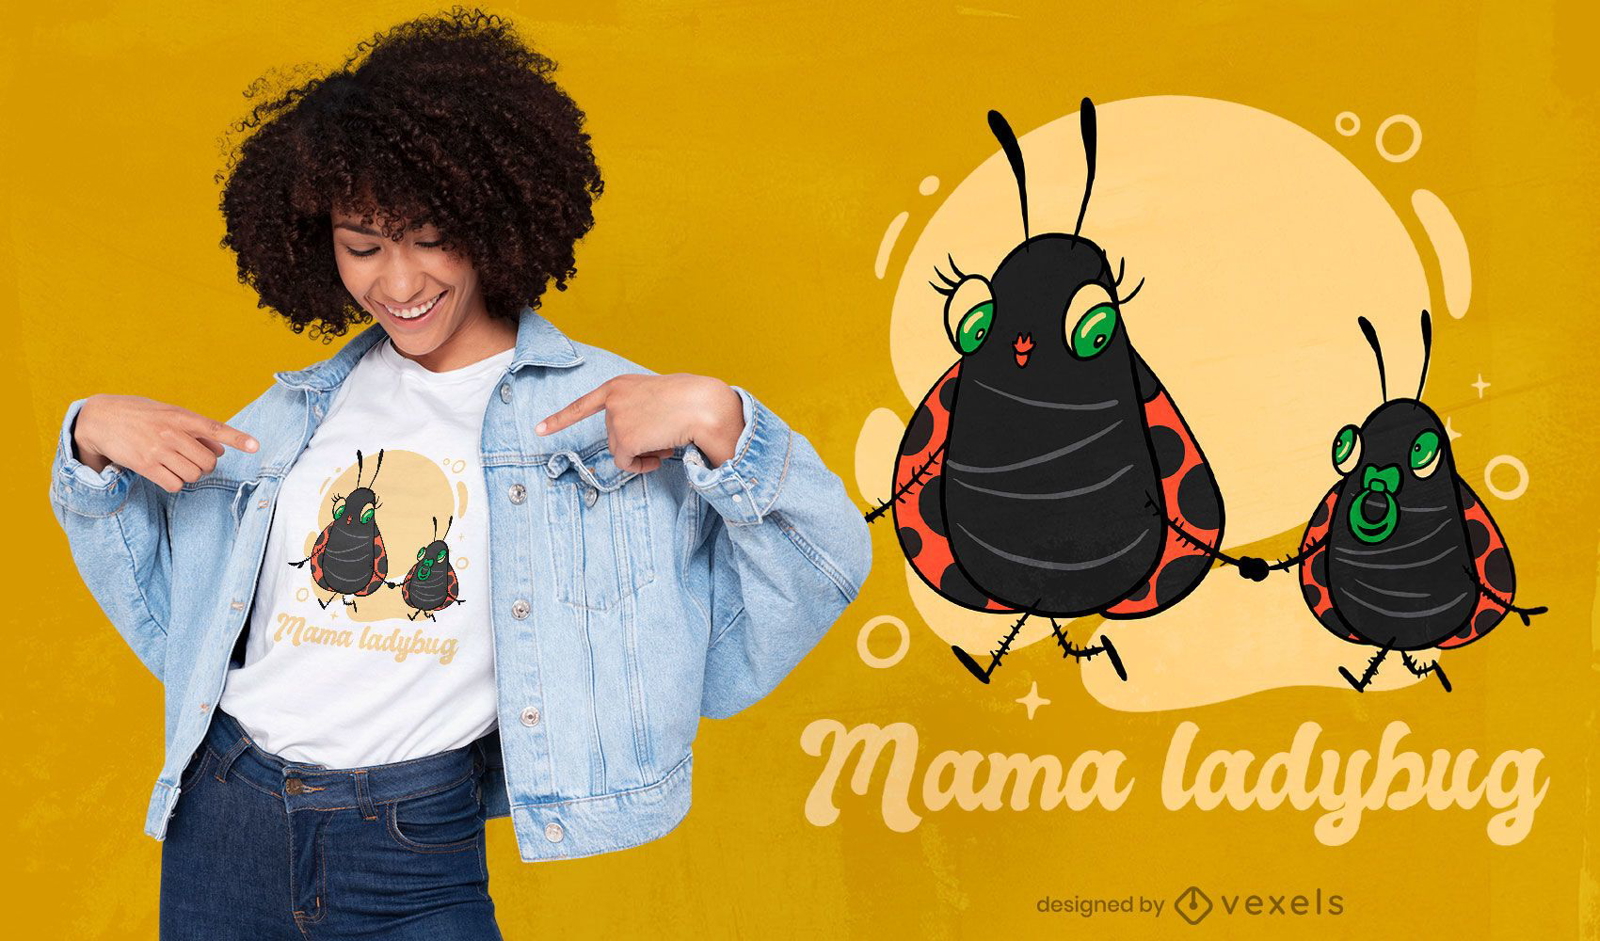 Mama ladybug t-shirt design